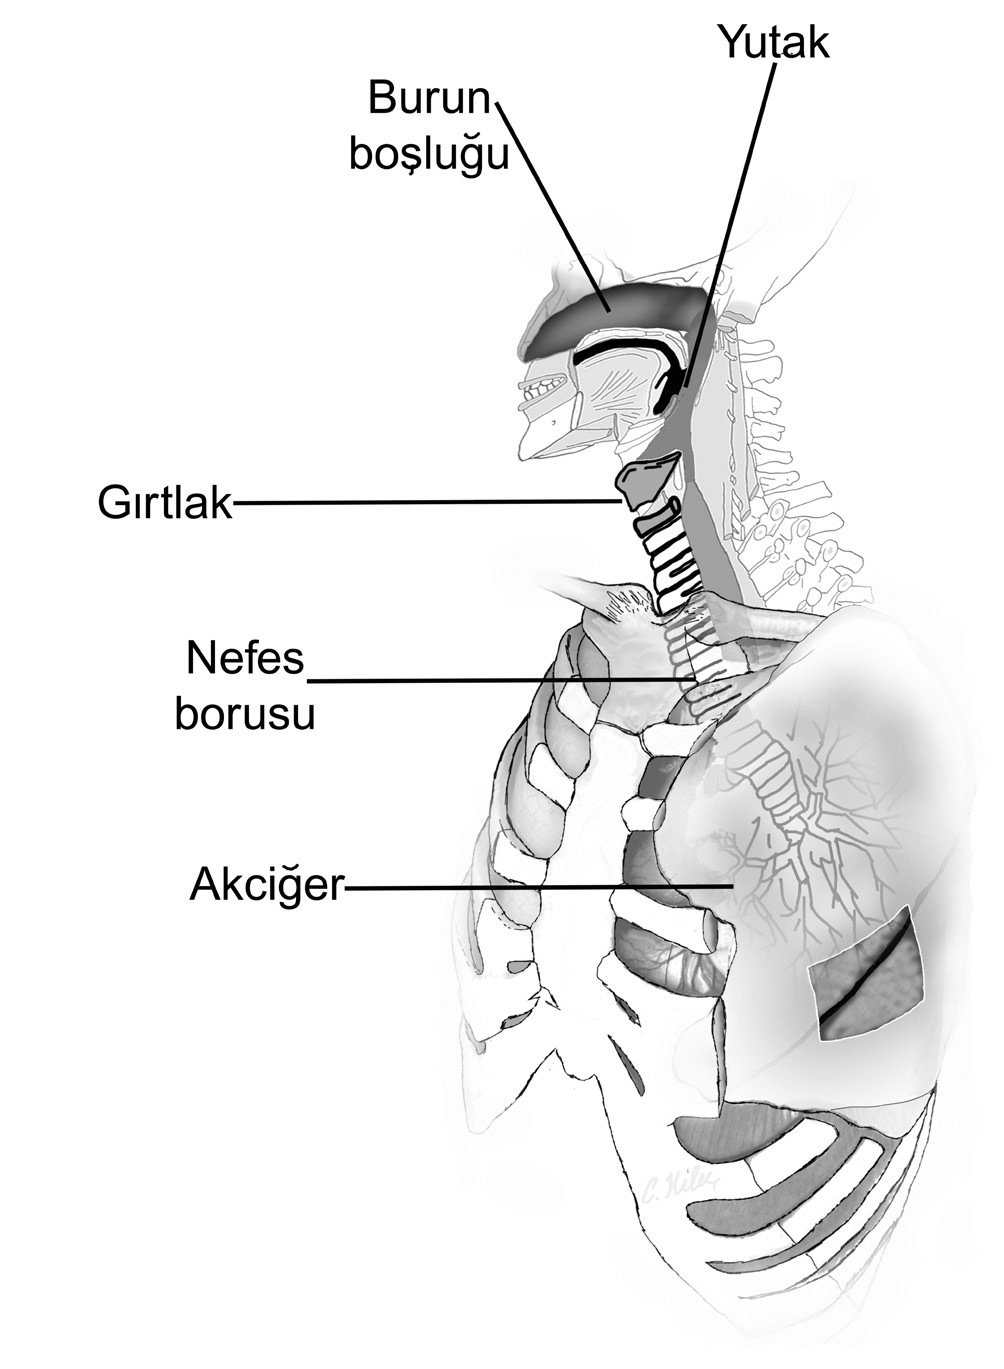 Solunum yolları Üst solunum yolları; nasus (burun), pars nasalis pharyngis (burun yutağı) ve larynx (gırtlak) şeklinde, Alt solunum yolları;